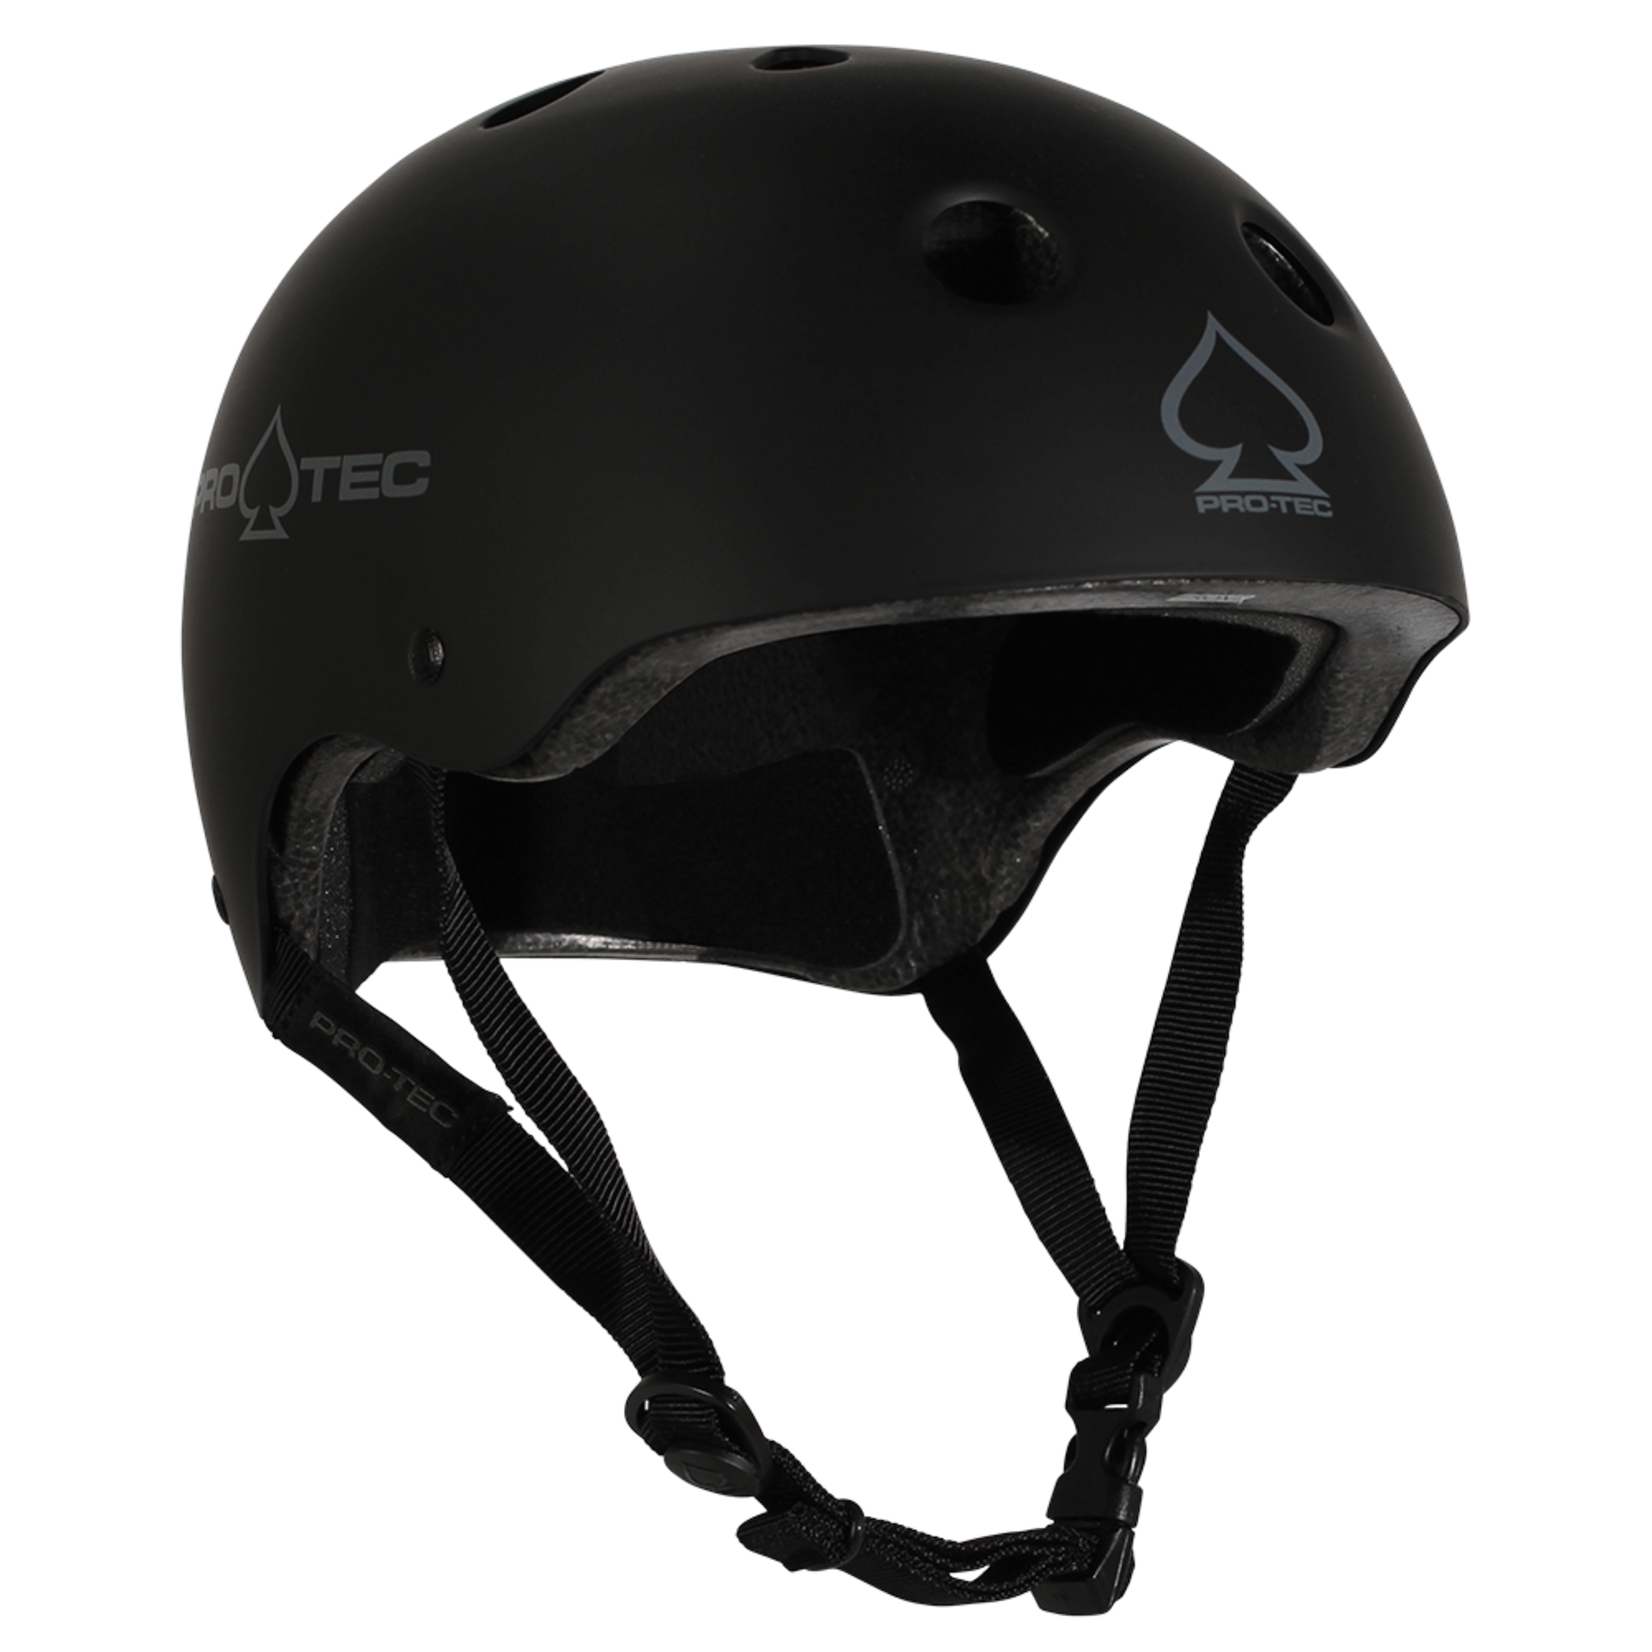 Pro-Tec Pro-Tec Classic Skate Helmet